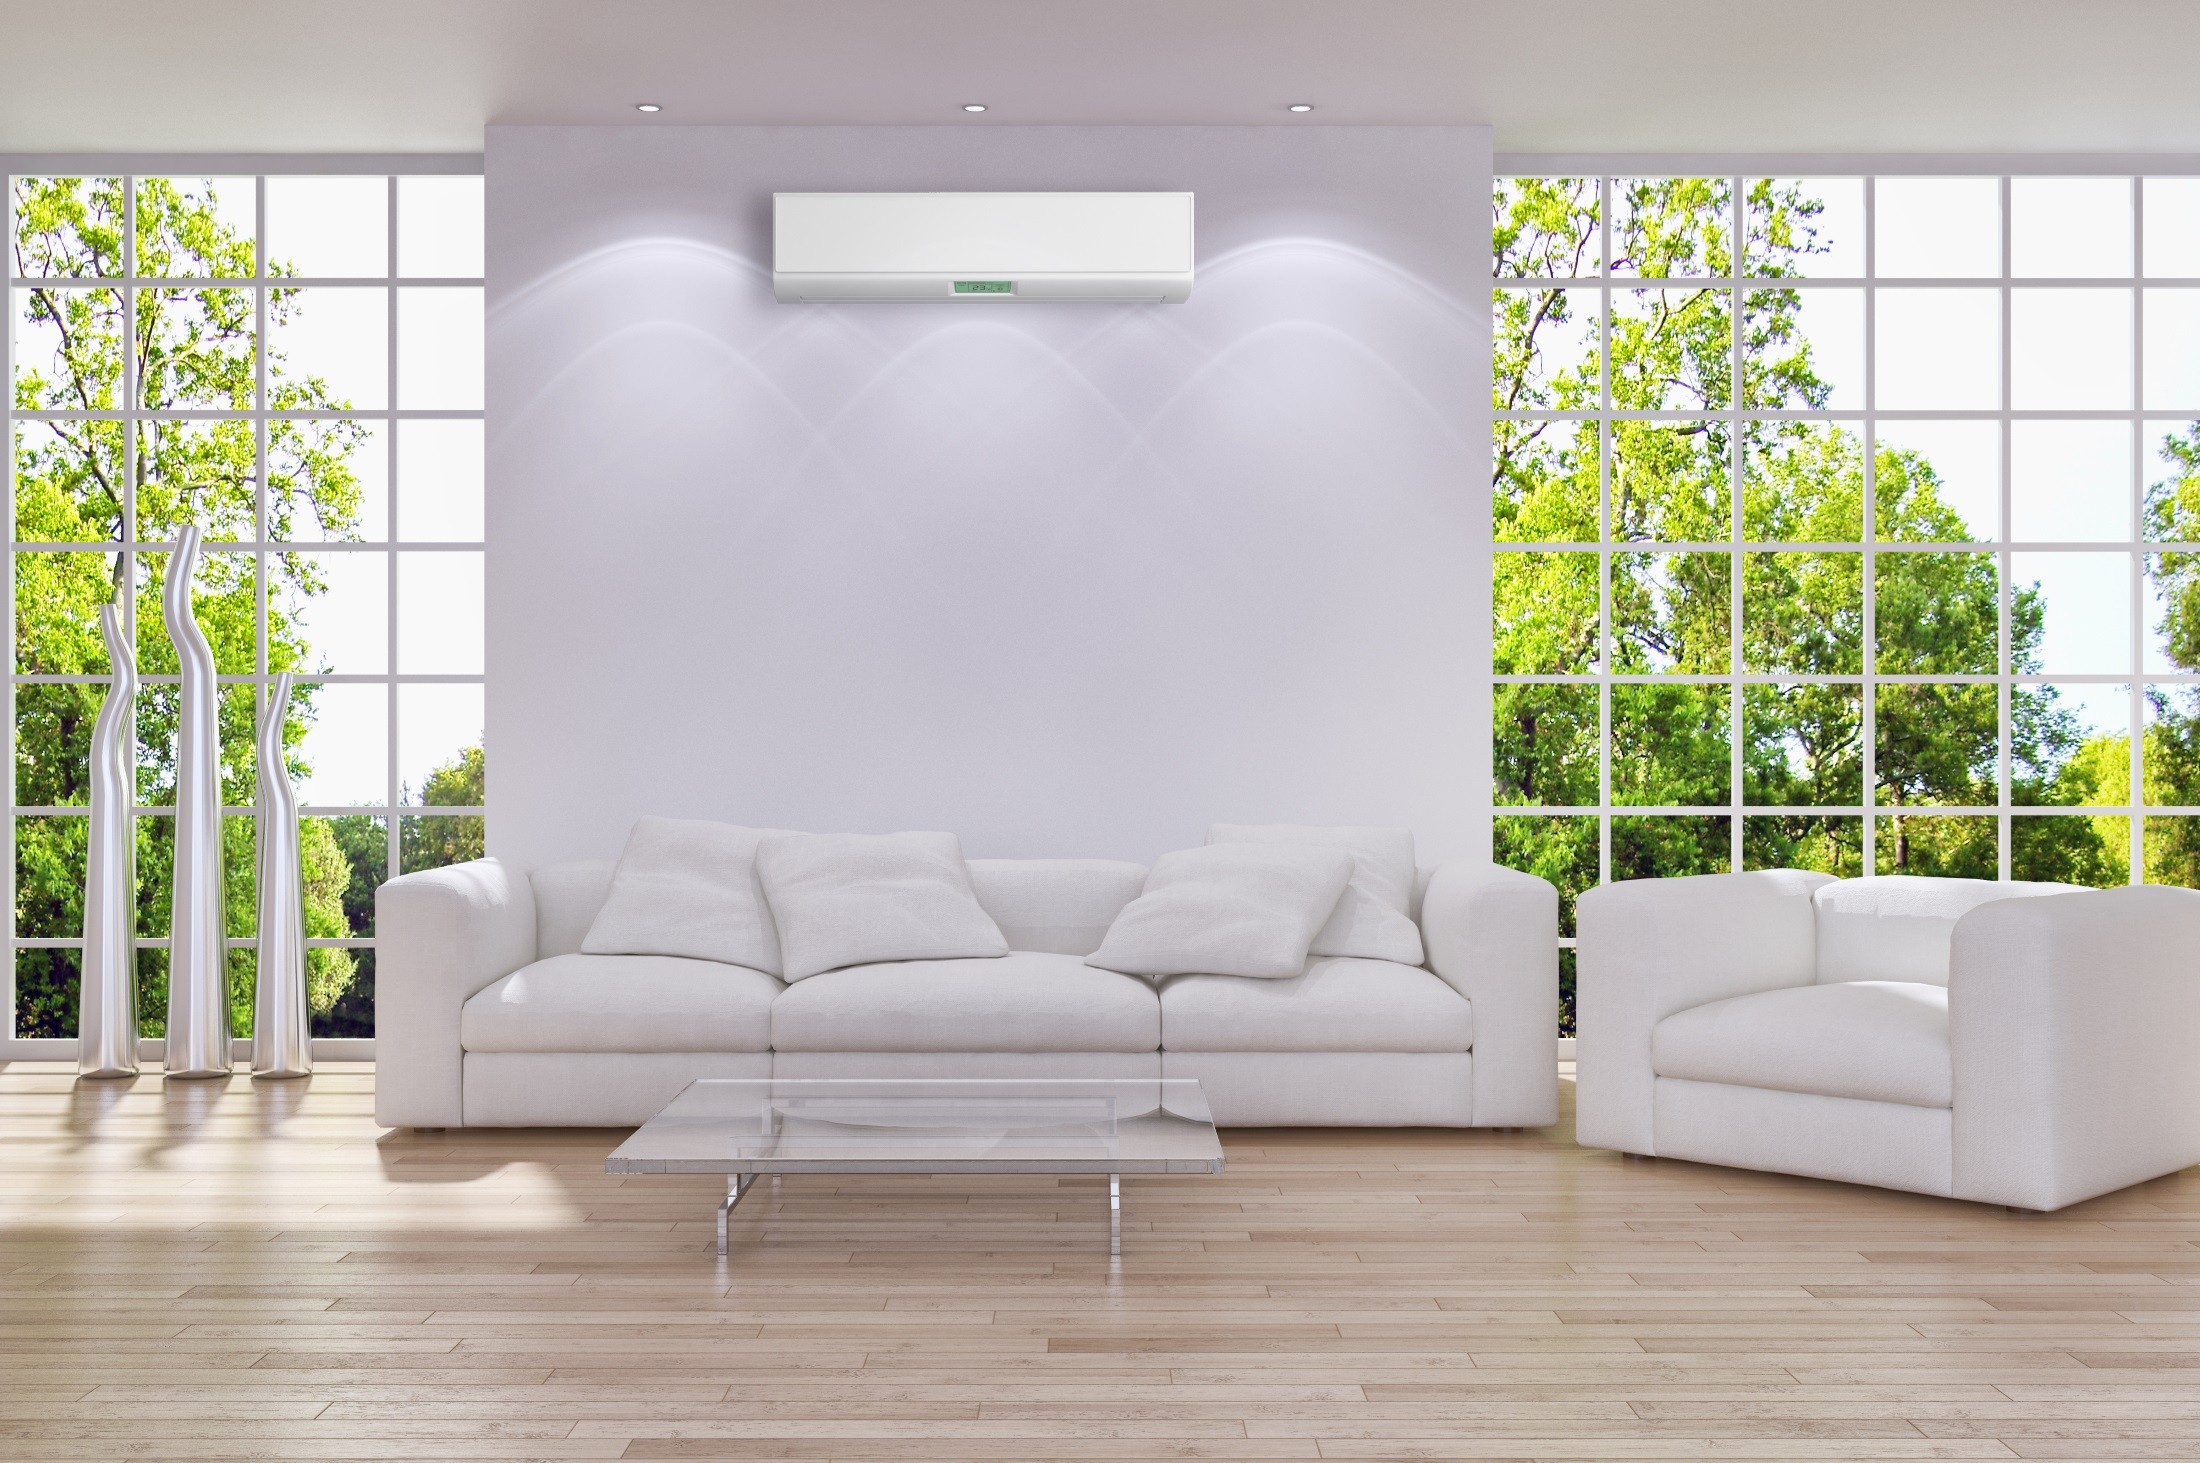 Home salon air-conditioner